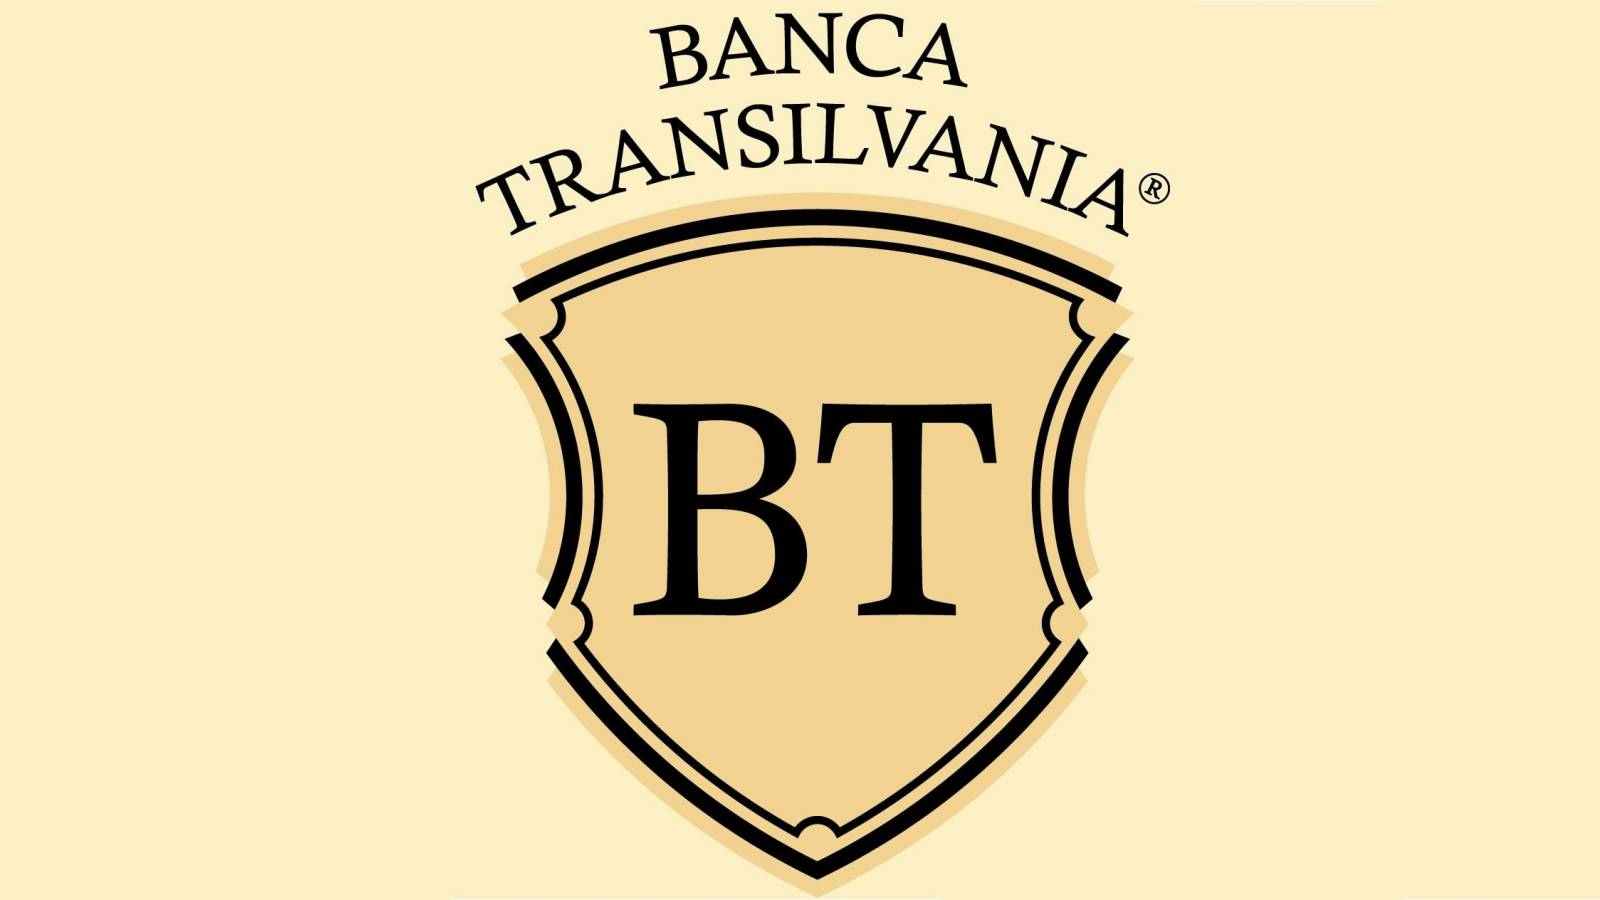 Quittung der BANCA Transilvania